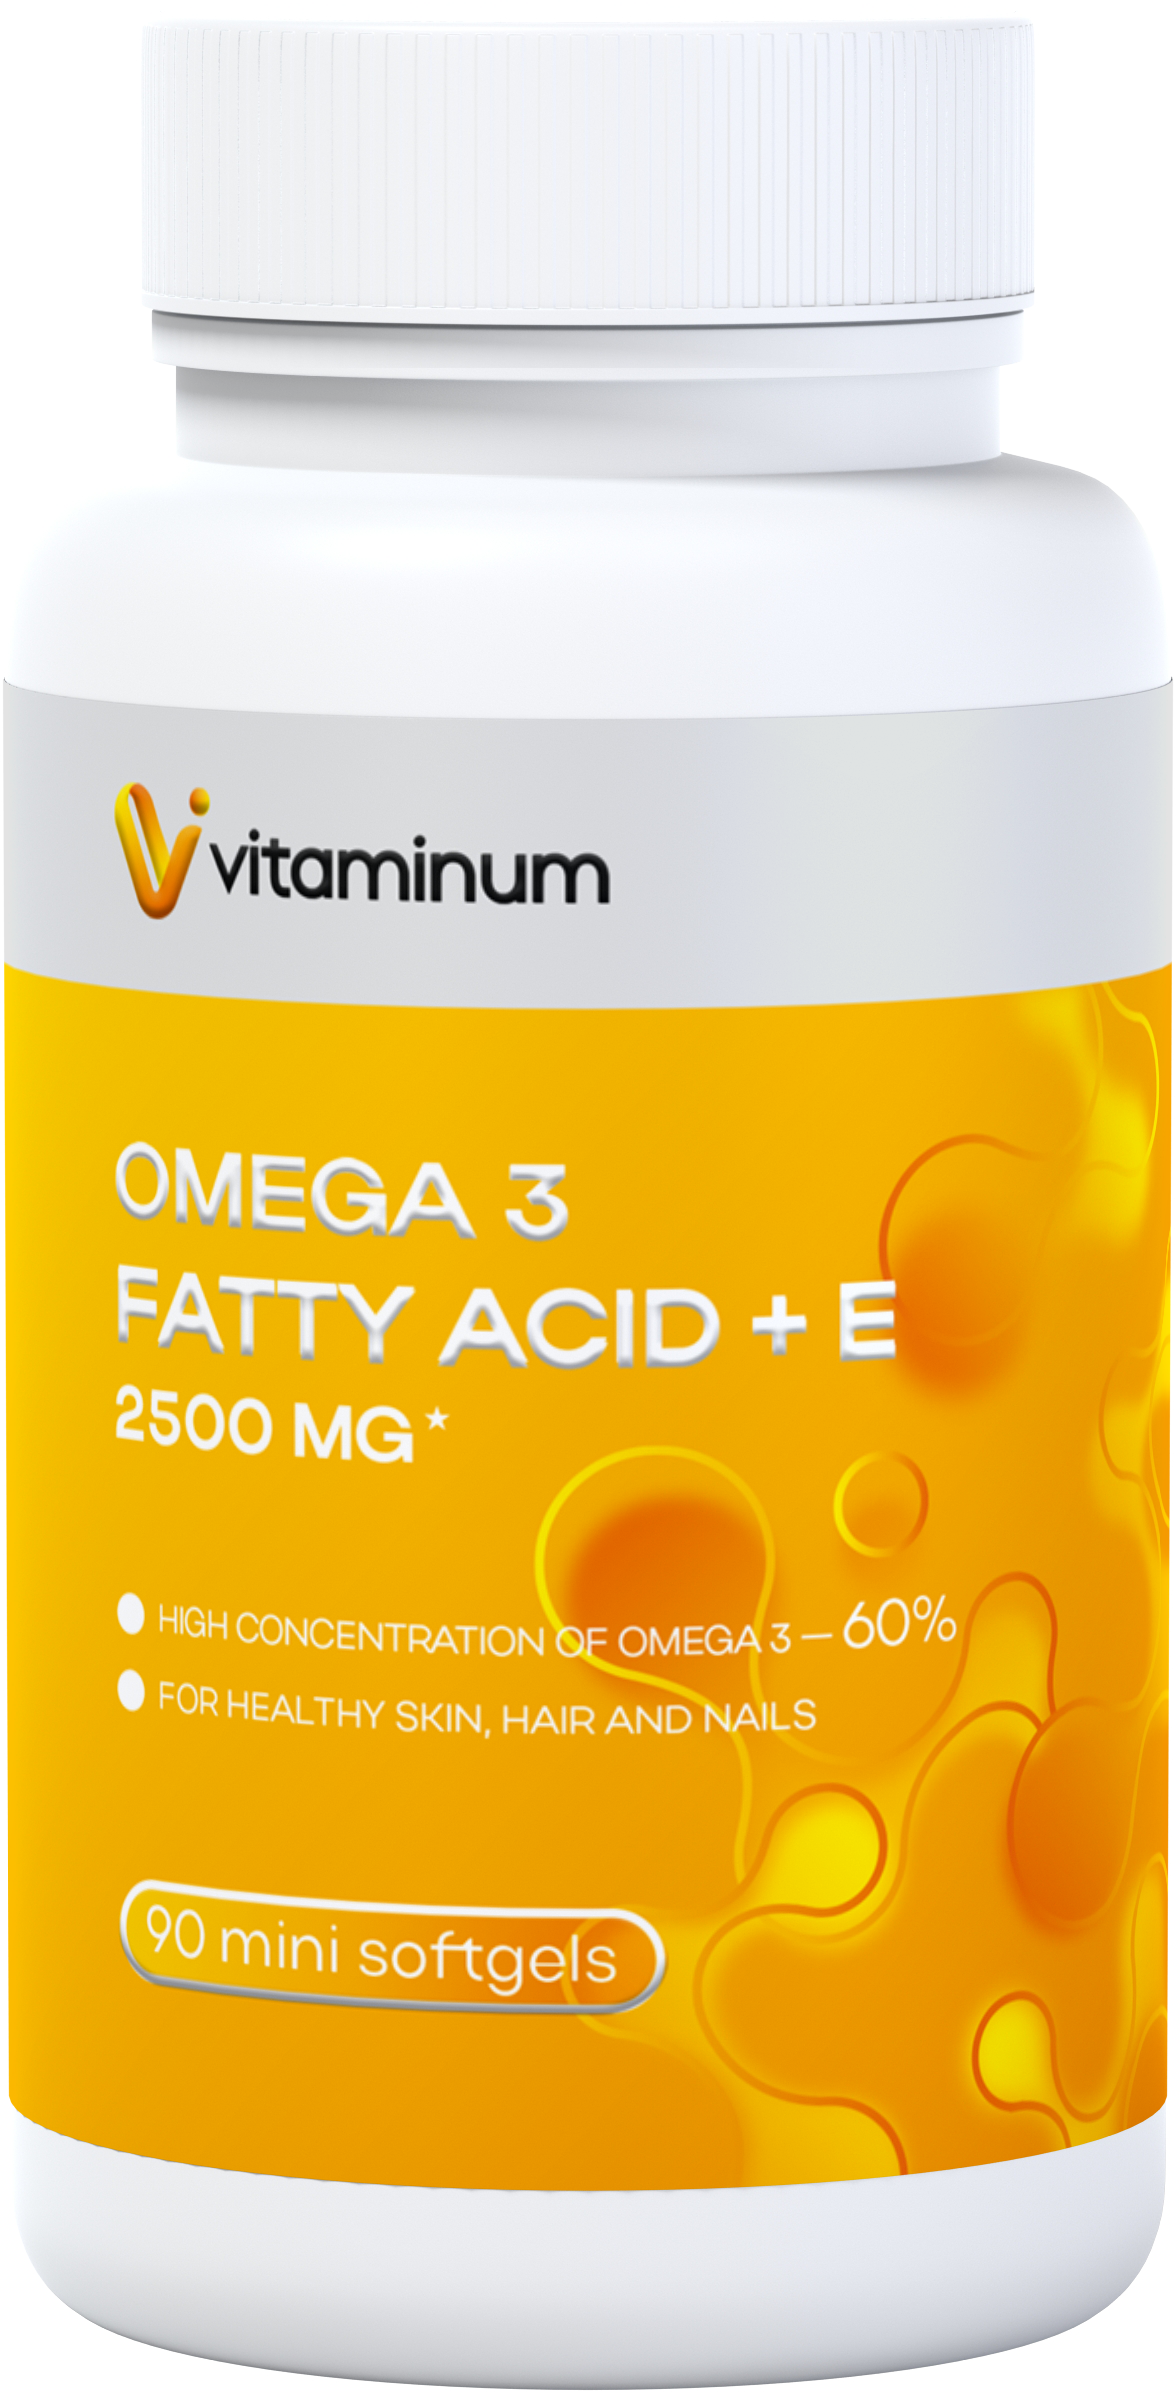  Vitaminum ОМЕГА 3 60% + витамин Е (2500 MG*) 90 капсул 700 мг  в Саратове